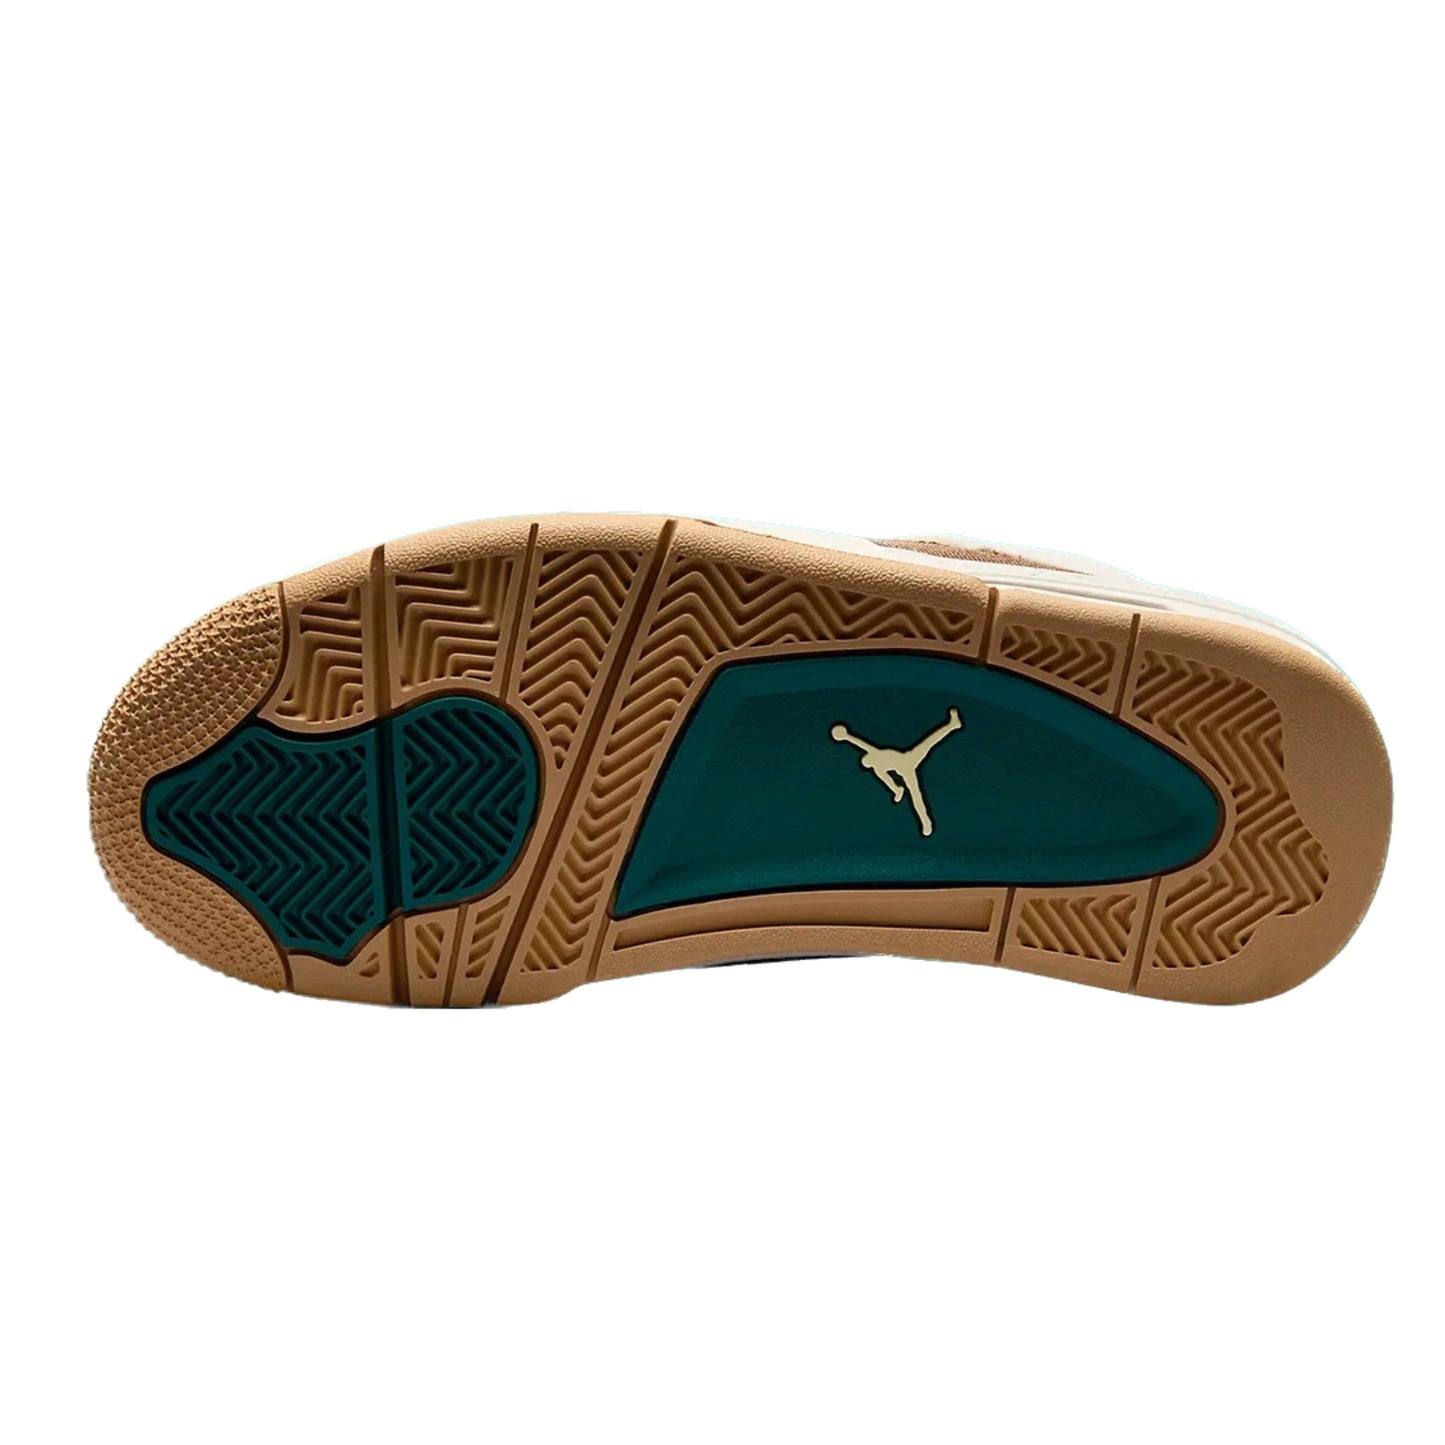 Air Jordan 4 Retro (GS) Cacao Wow Geode Teal Ale Brown Twine Sail Luminous Green